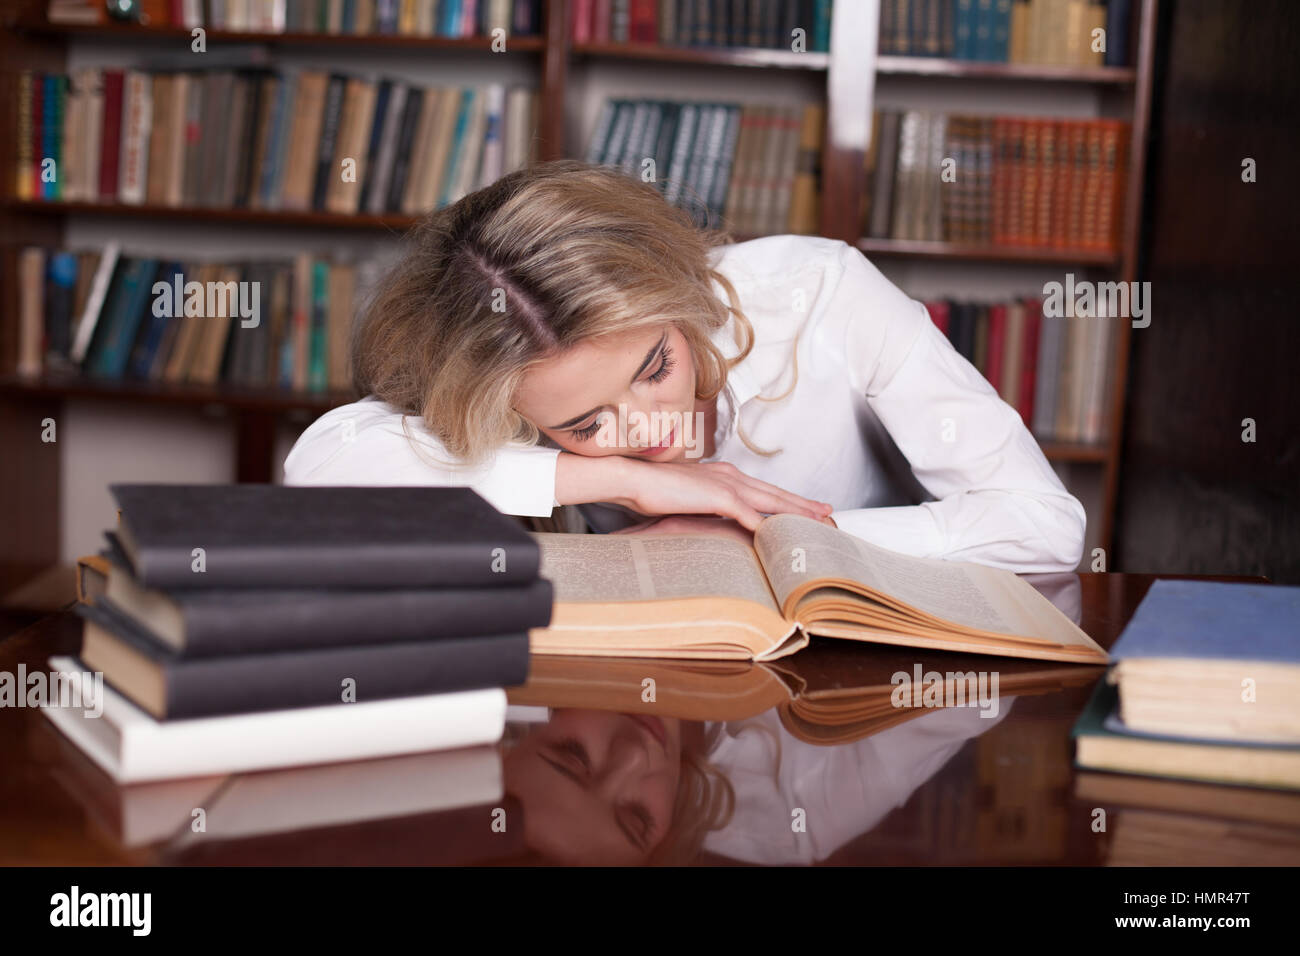 Читать книгу и спать. Уснувший над книгой. Девушка уснула над книгой. Девушка с книгами уставшая.